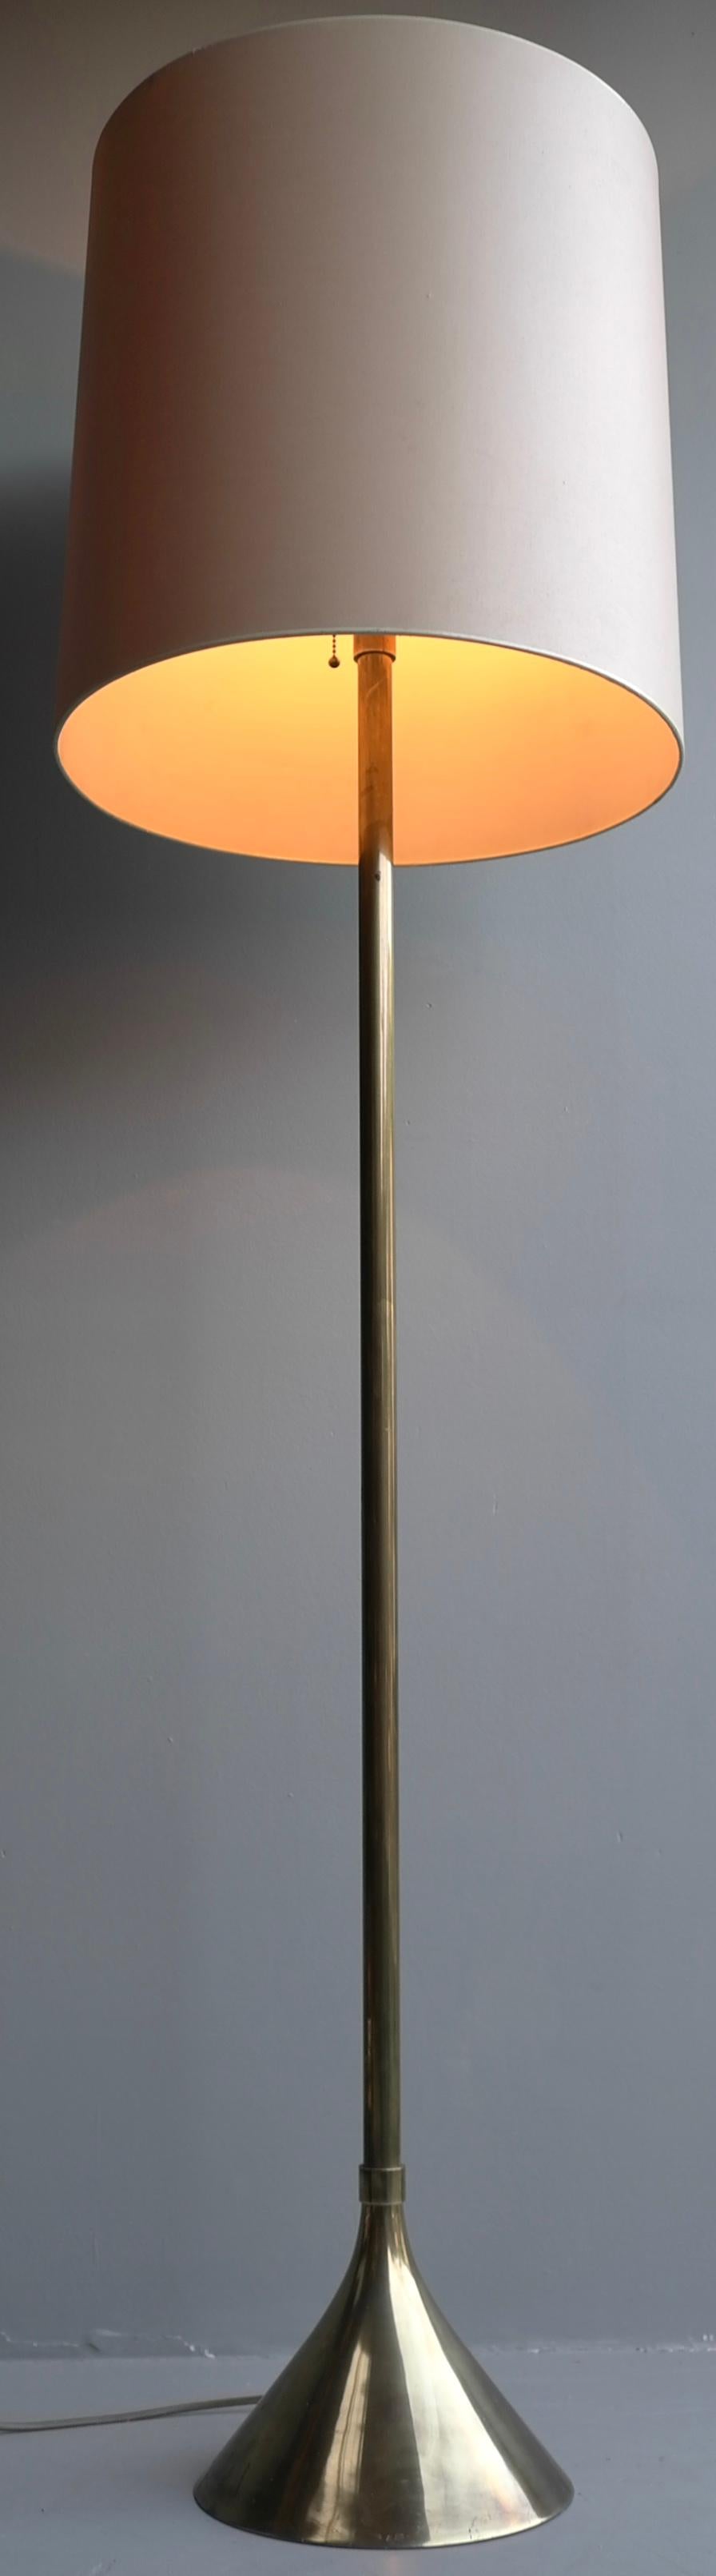 Lampadaire avec base en forme de trompette en laiton, Italie années 1960.


Mesures : Hauteur 163cm, diamètre de l'abat-jour 45cm x 45cm.